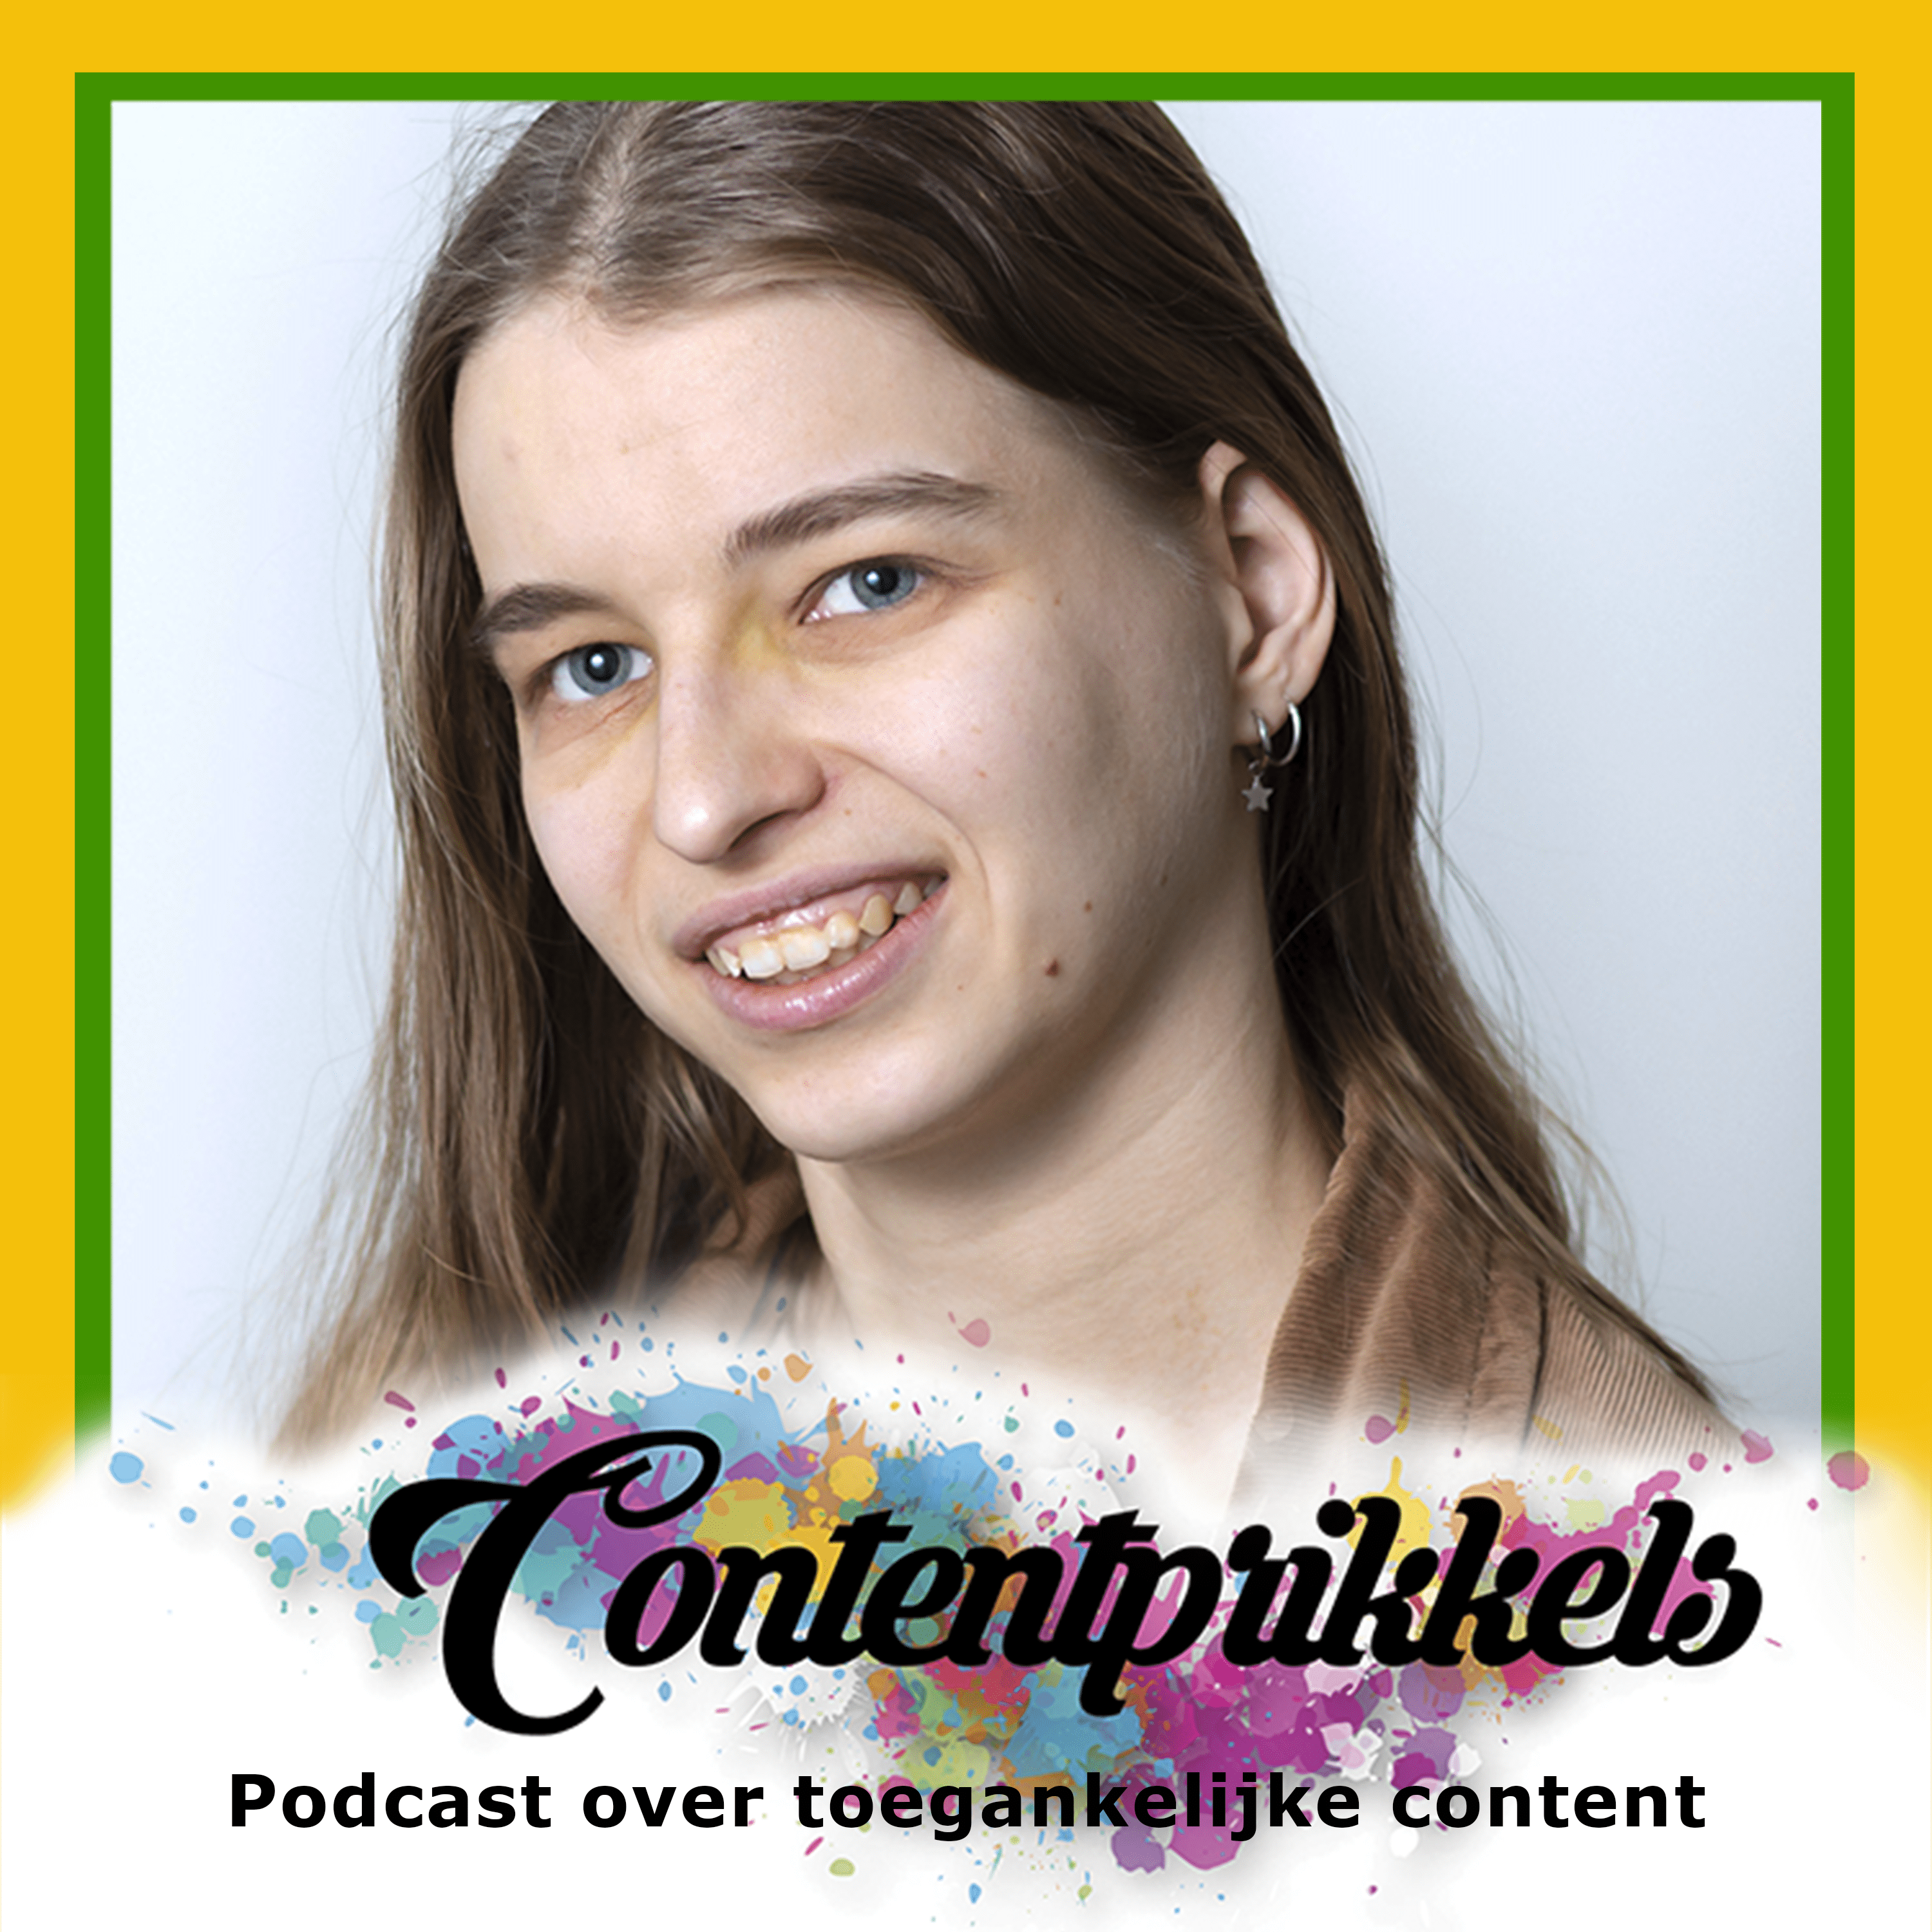 Marrit met in sierlijke letters Contentprikkels en daaronder in rechte letters Podcast over toegankelijke content